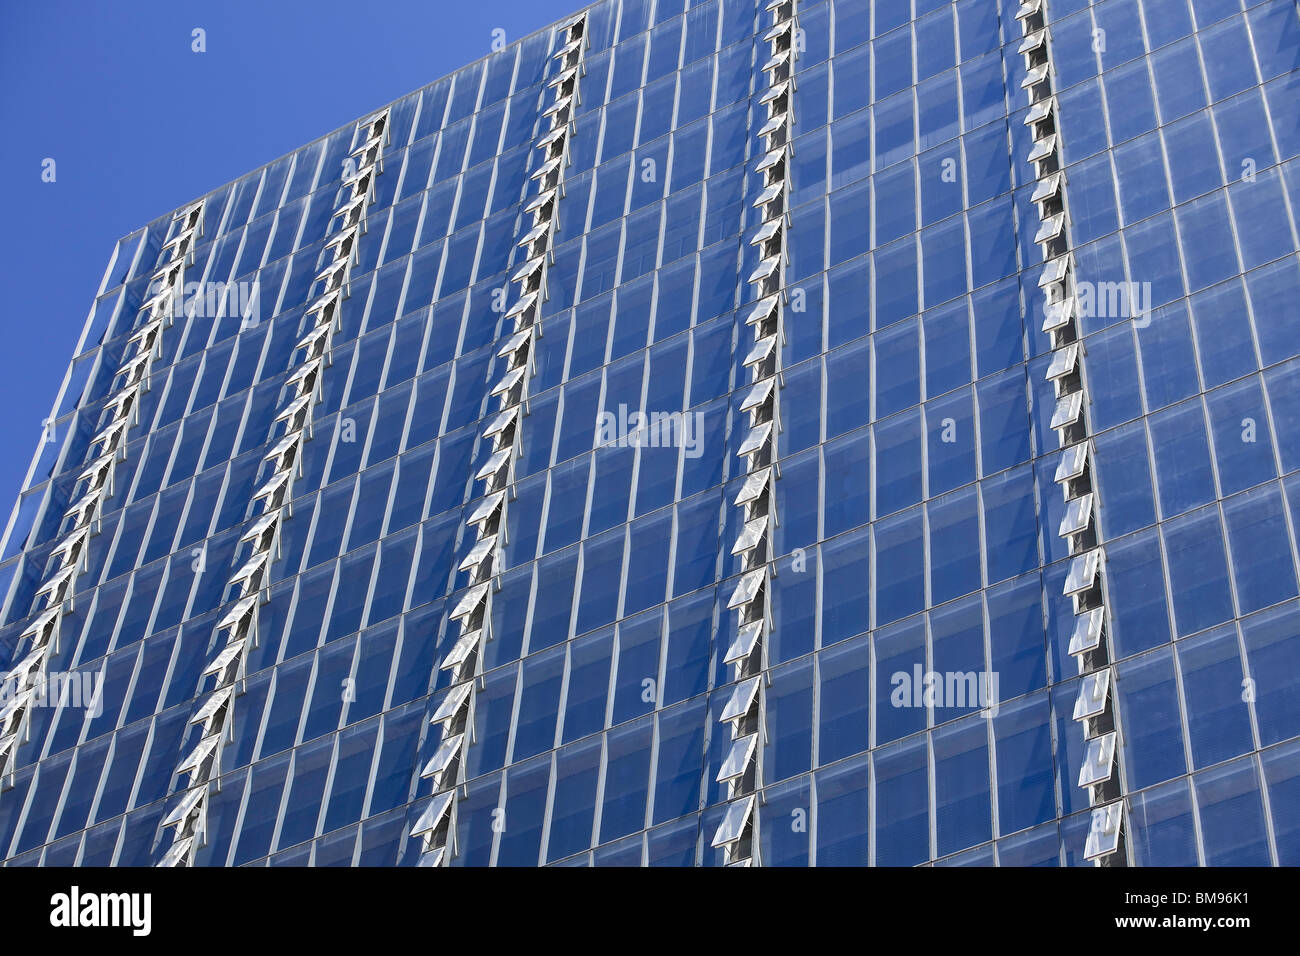 Rangées de fenêtres ouvertes sur les bâtiment Hydro Manitoba, Winnipeg, Manitoba, Canada Banque D'Images